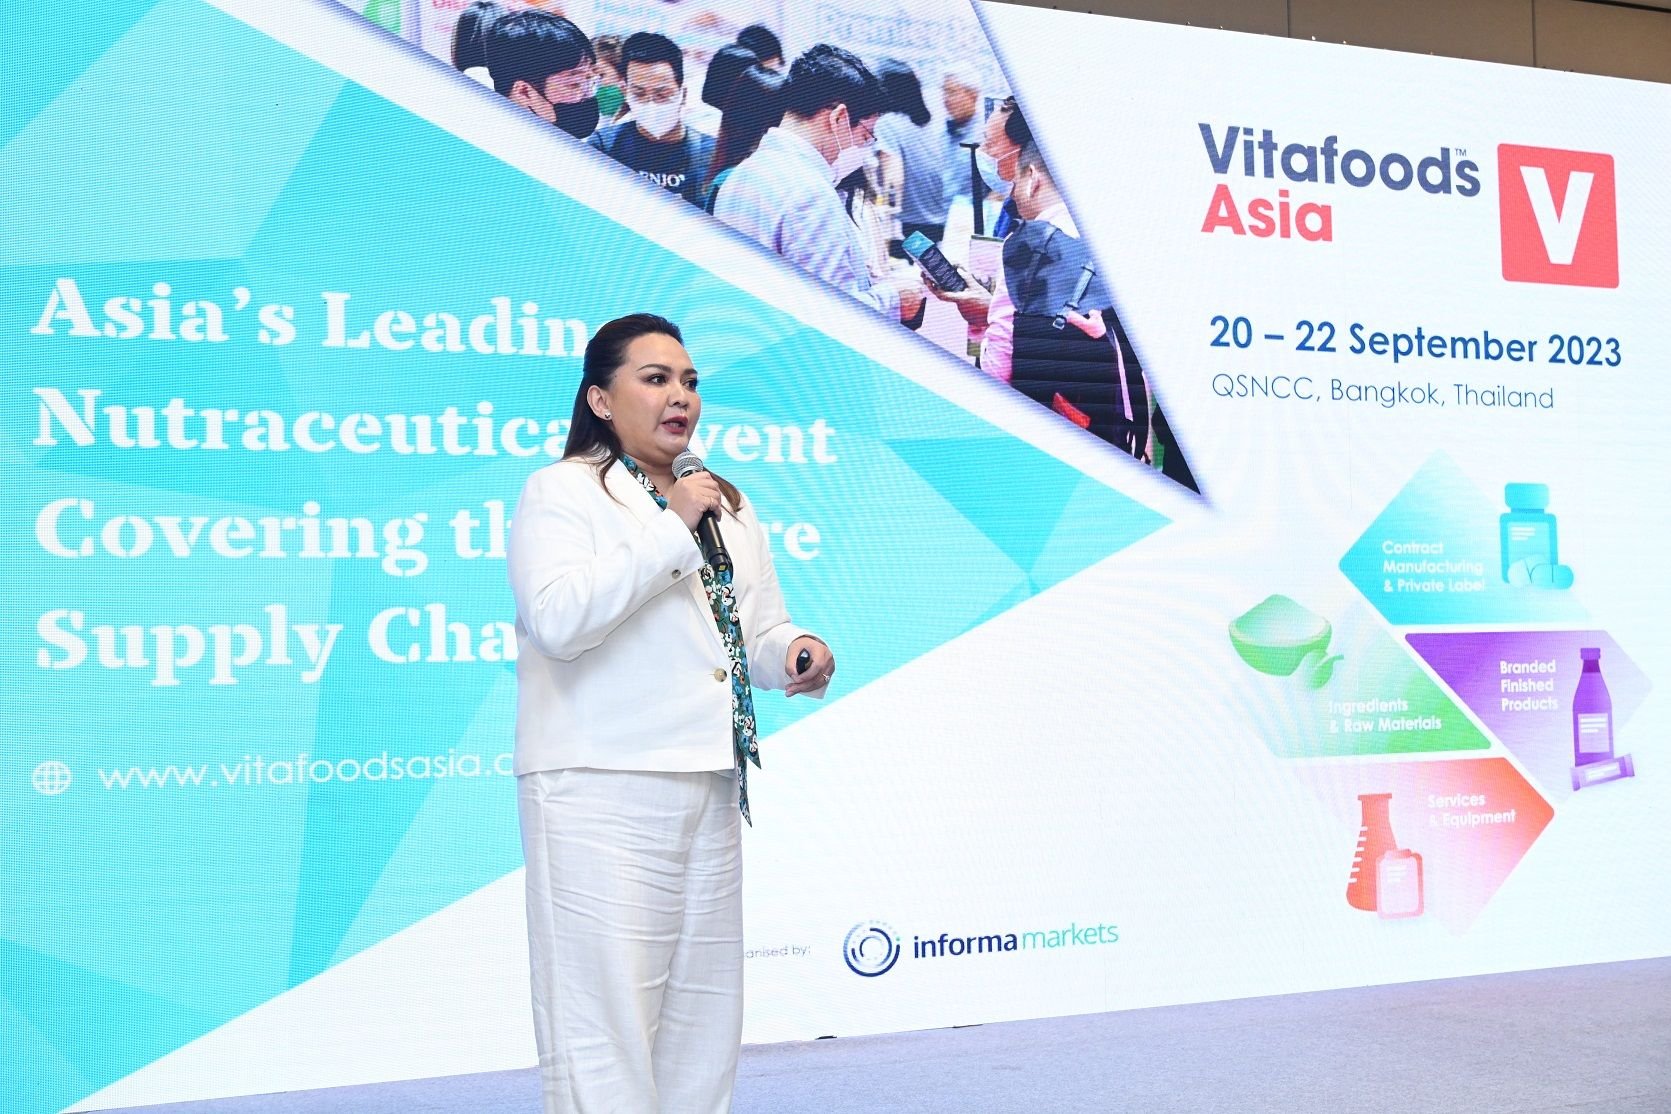 อินฟอร์มา มาร์เก็ตส์ฯ ดันไทยสู่ฮับนวัตกรรมเสริมอาหารและสารสกัด จัดงาน ‘Vitafoods Asia 2023’ สร้างแต้มต่อธุรกิจเสริมอาหารด้วย 'เทคโนโลยี-เครือข่าย’